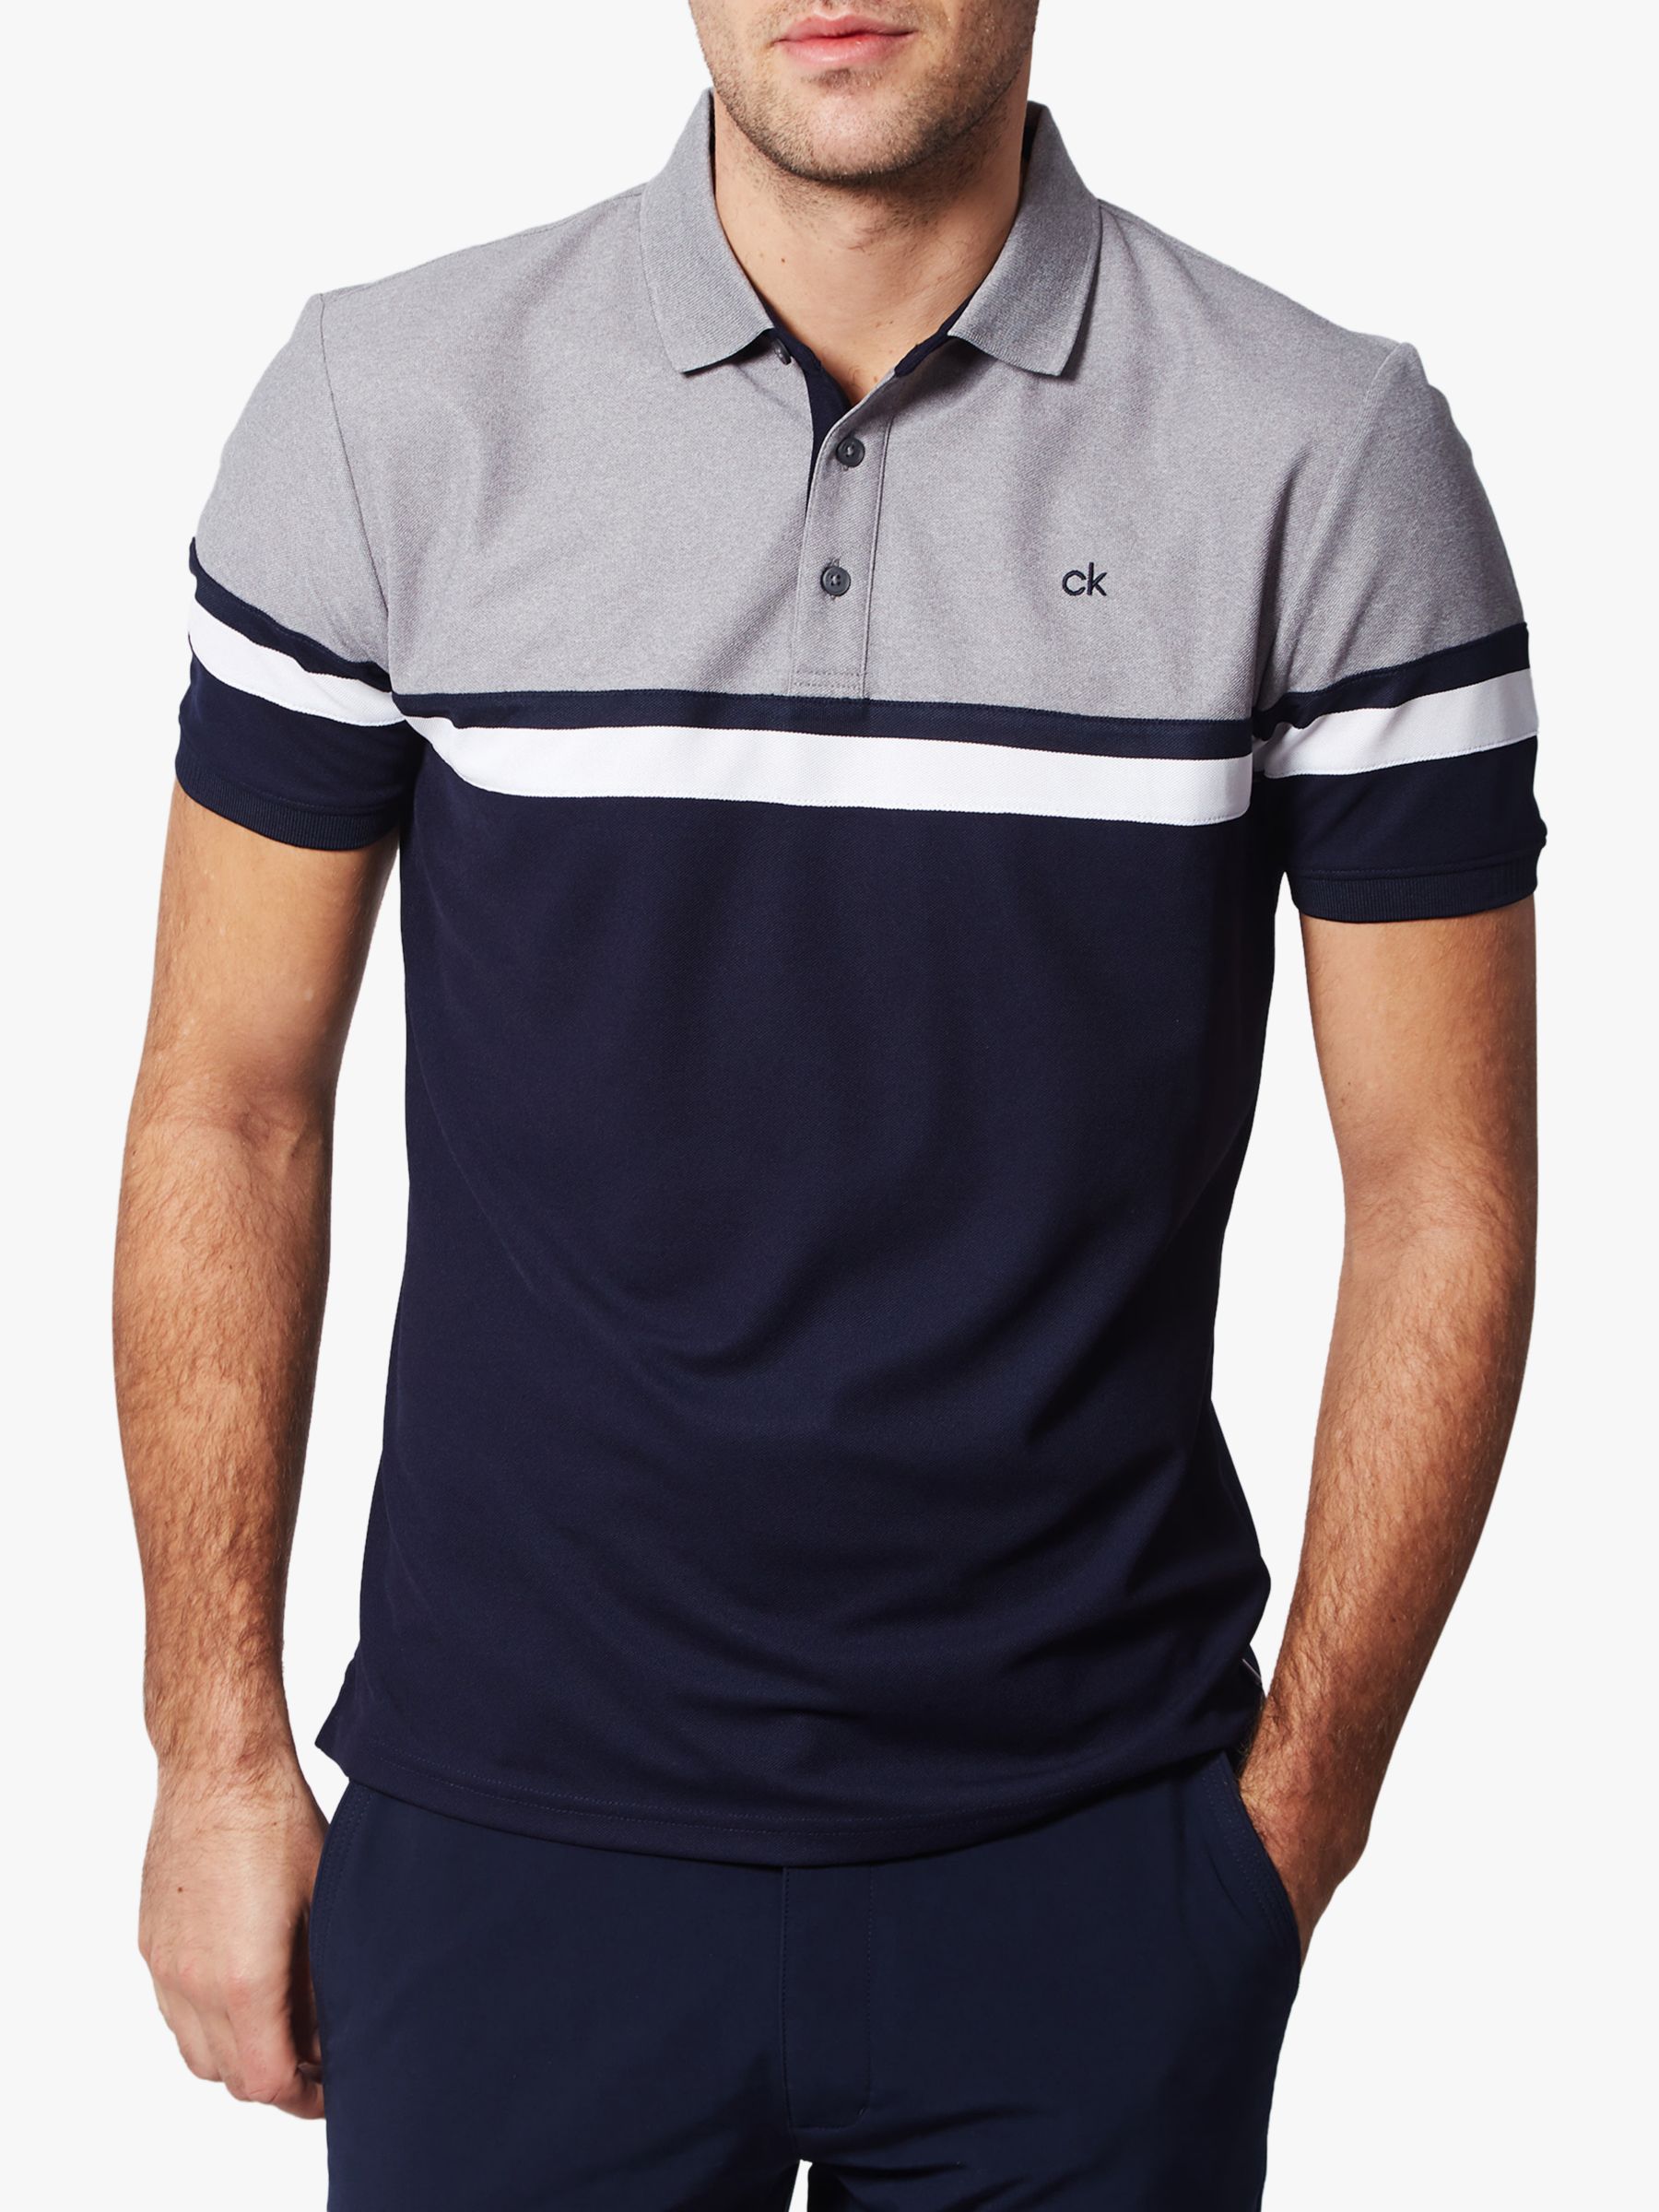 Calvin Klein Golf Pendant Polo Shirt, Navy/Grey Marl